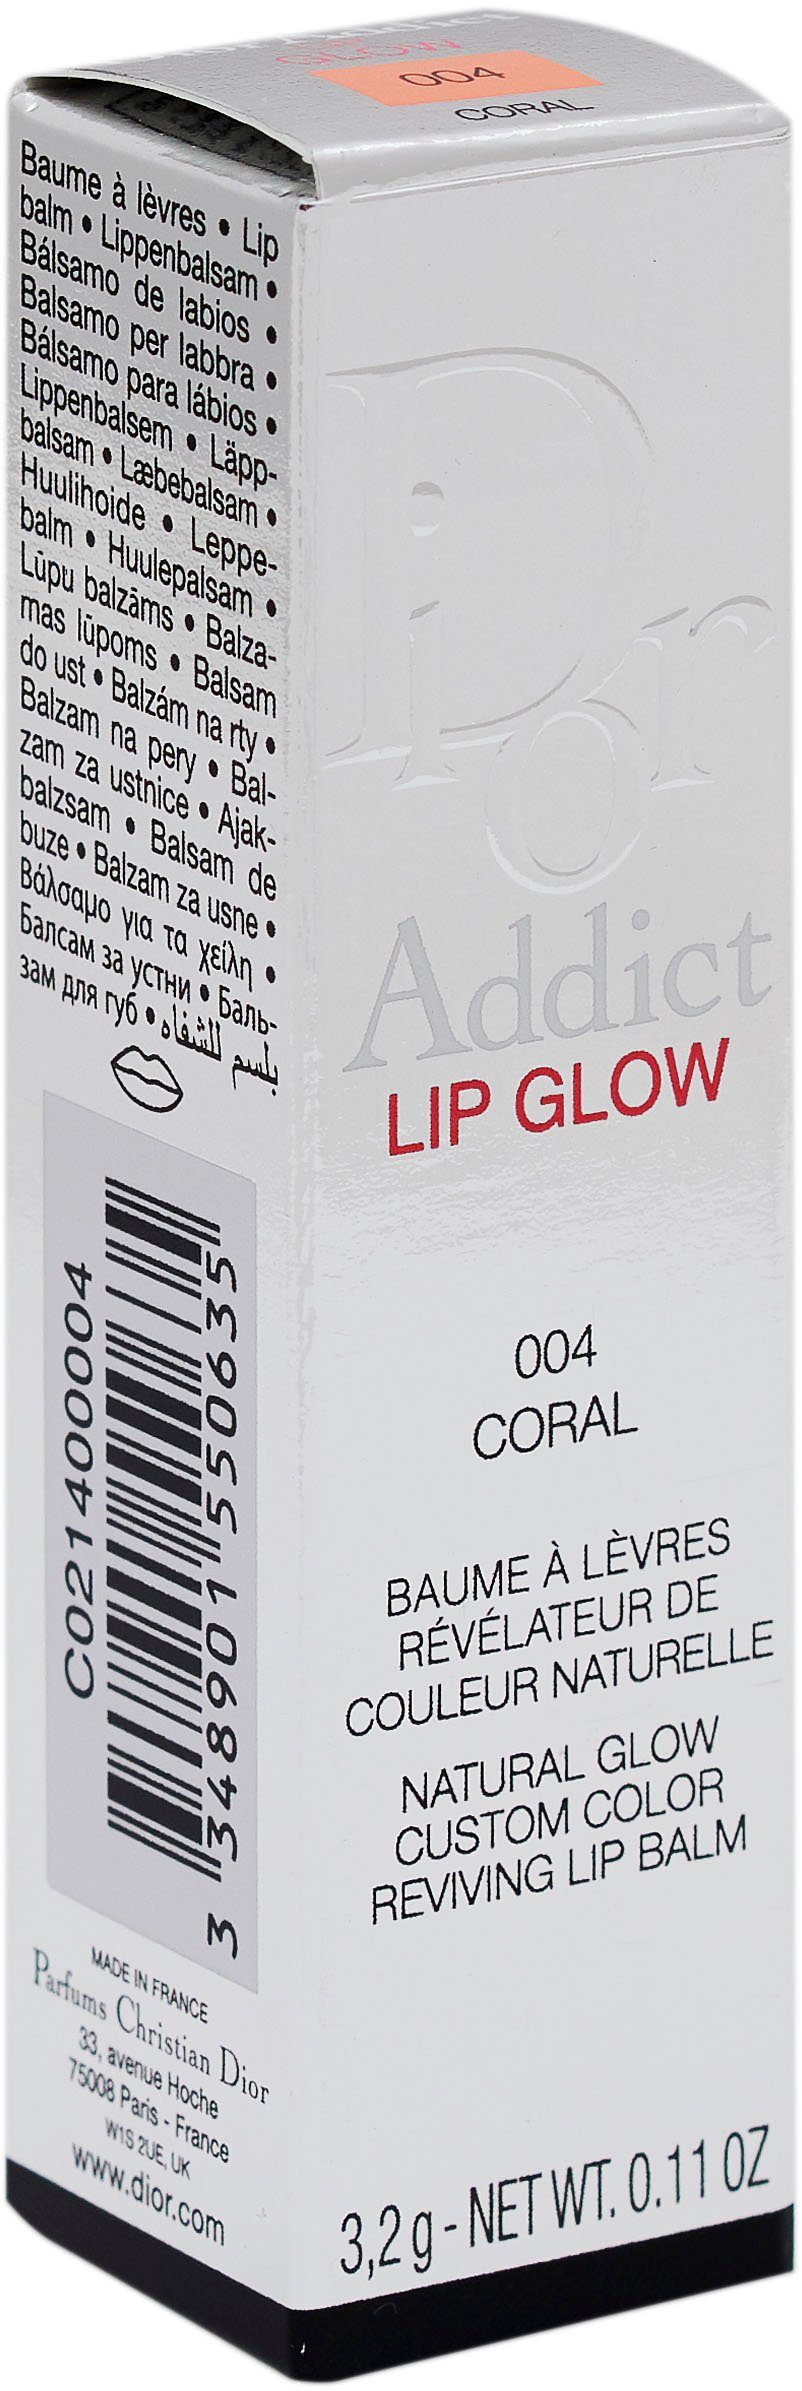 Lippenbalsam Dior 004 Dior Addict Glow Coral Lip